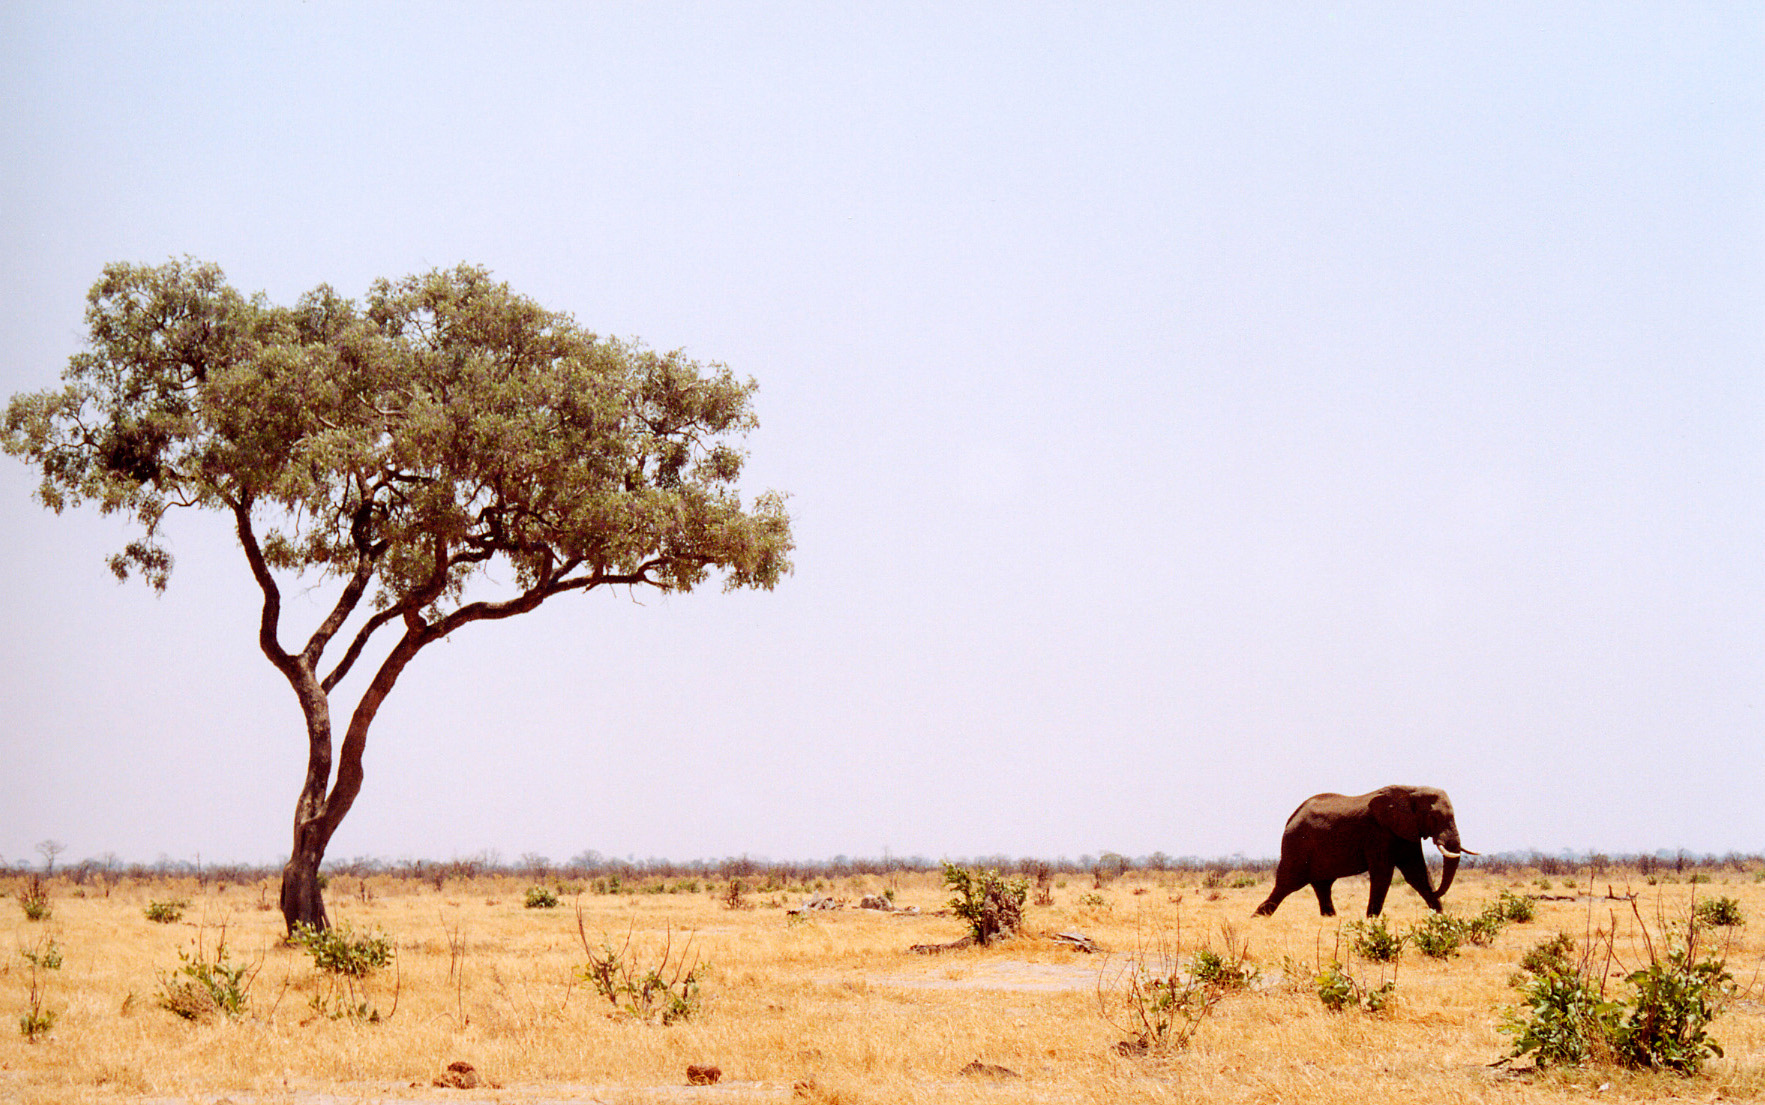 Botswana: A lone elephant walking near a lone marula tree in a grasslands landscape. Plenty of copy space in the pale blue sky.